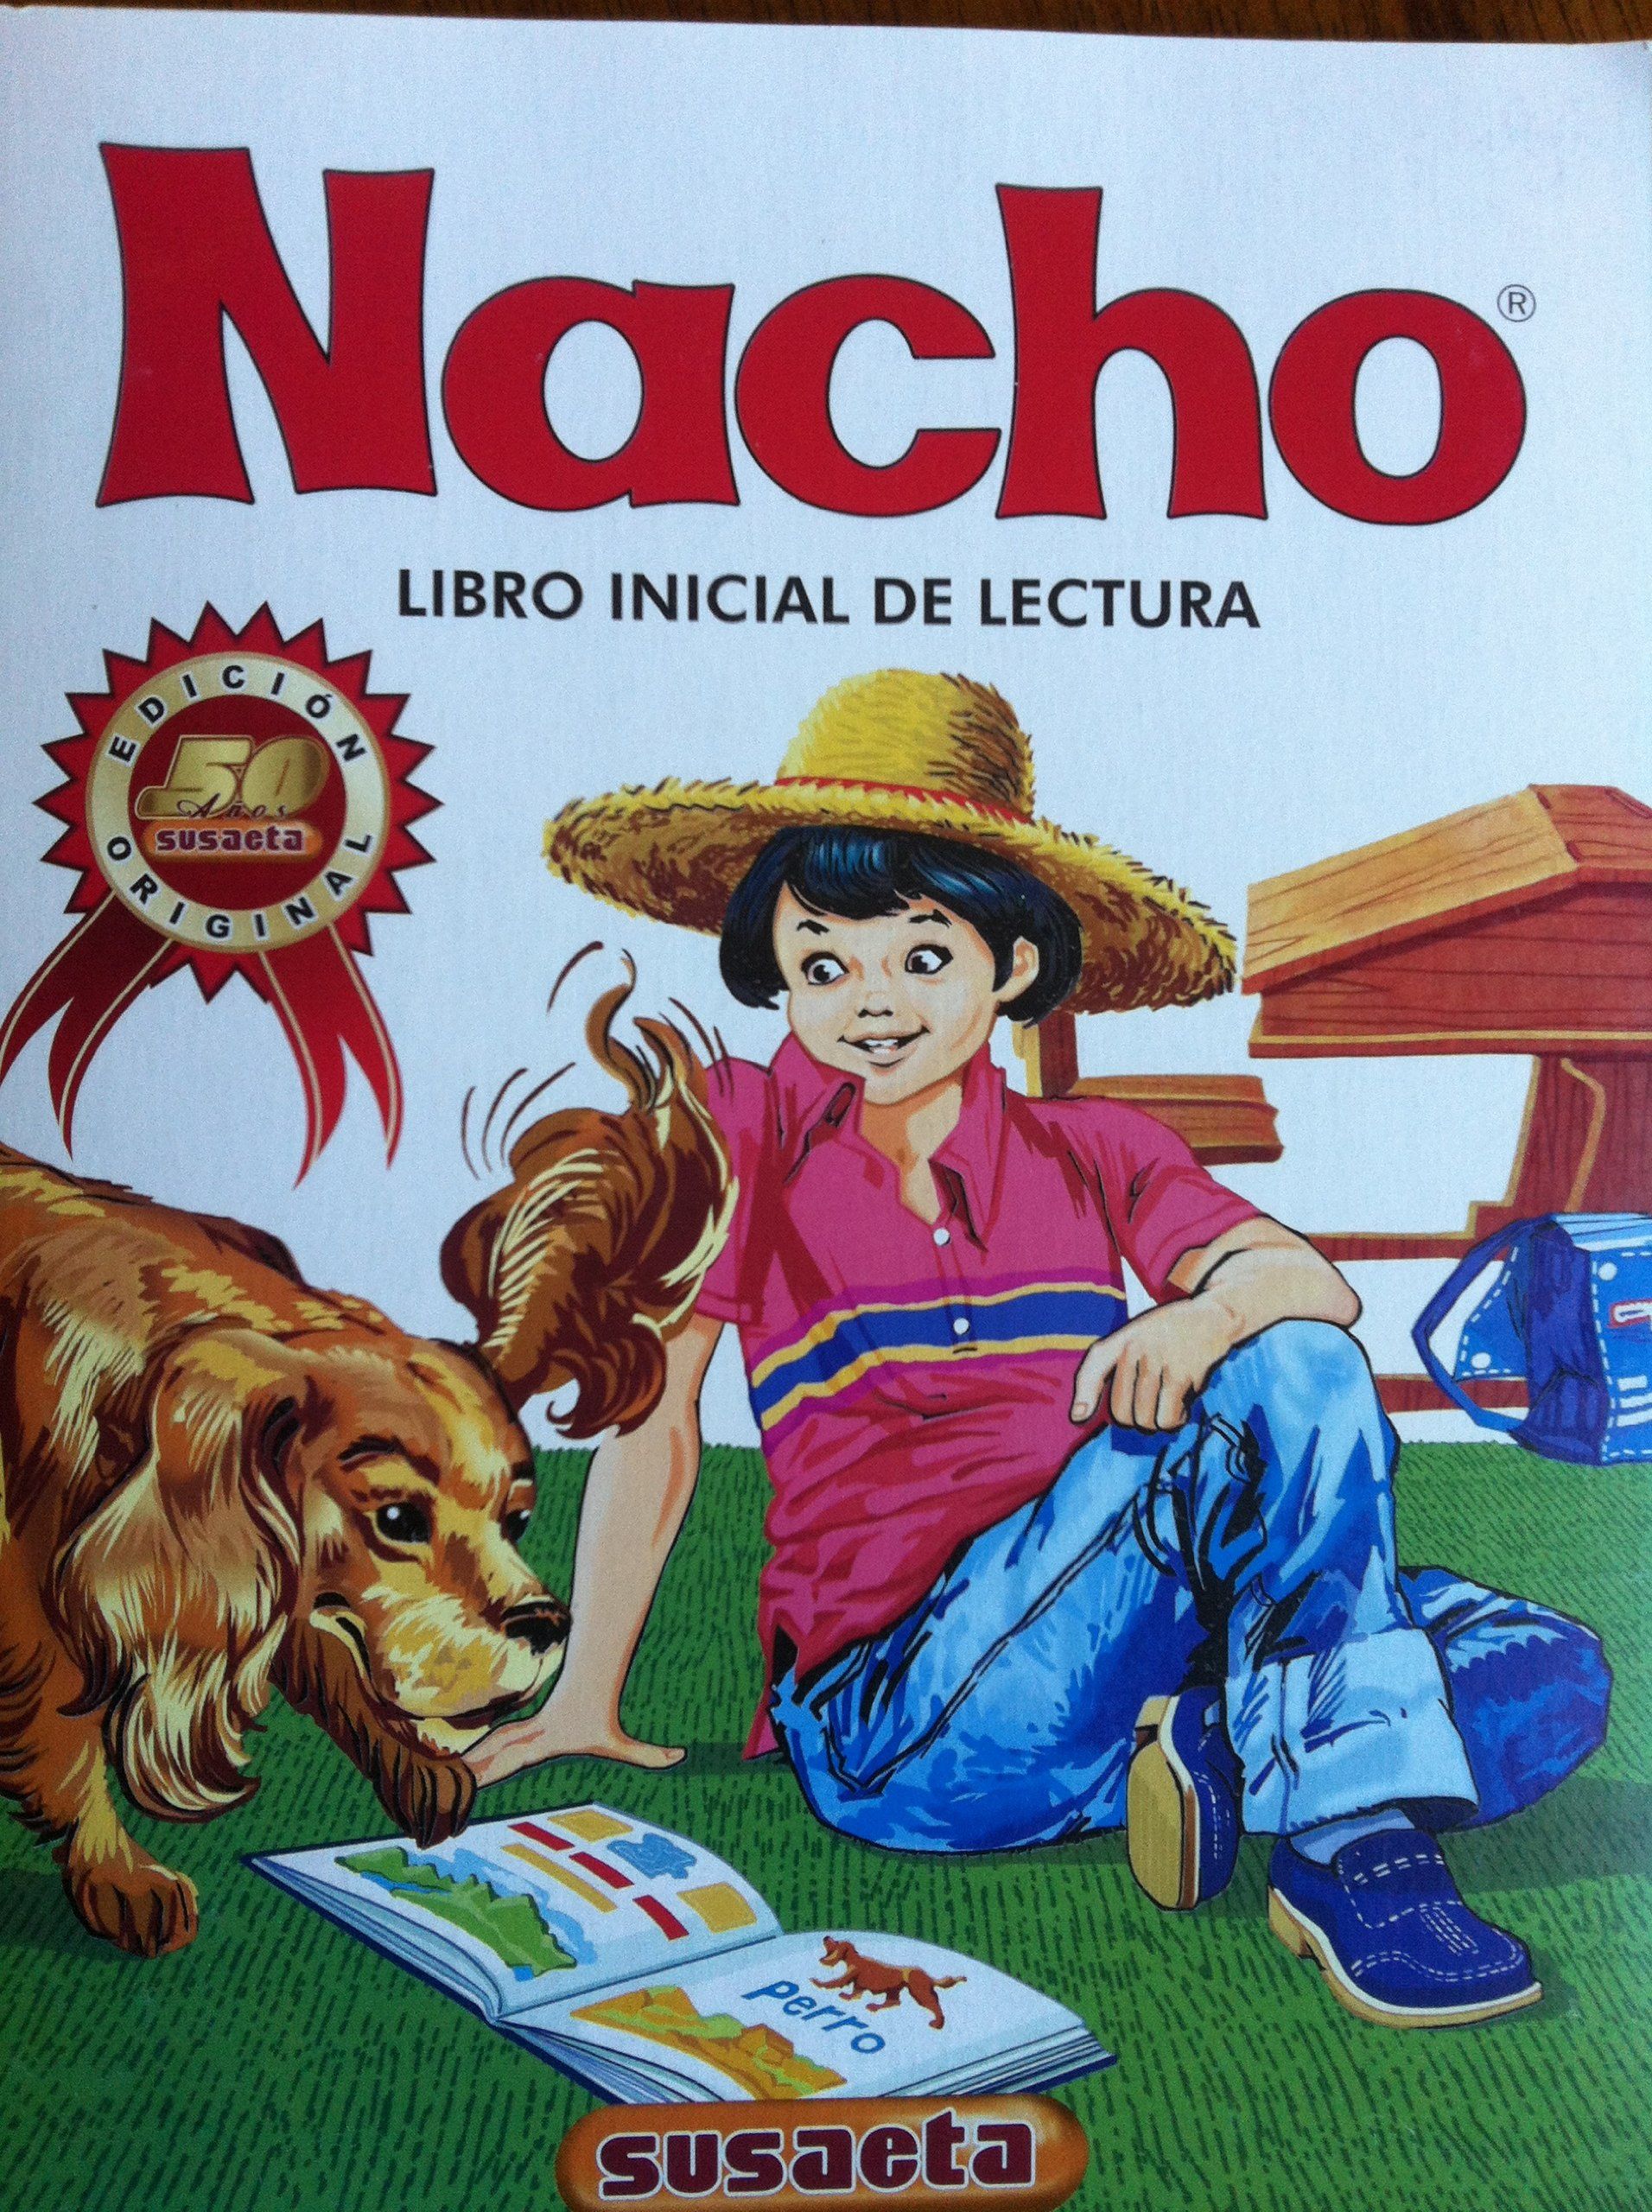 descargar el libro nacho pdf printer